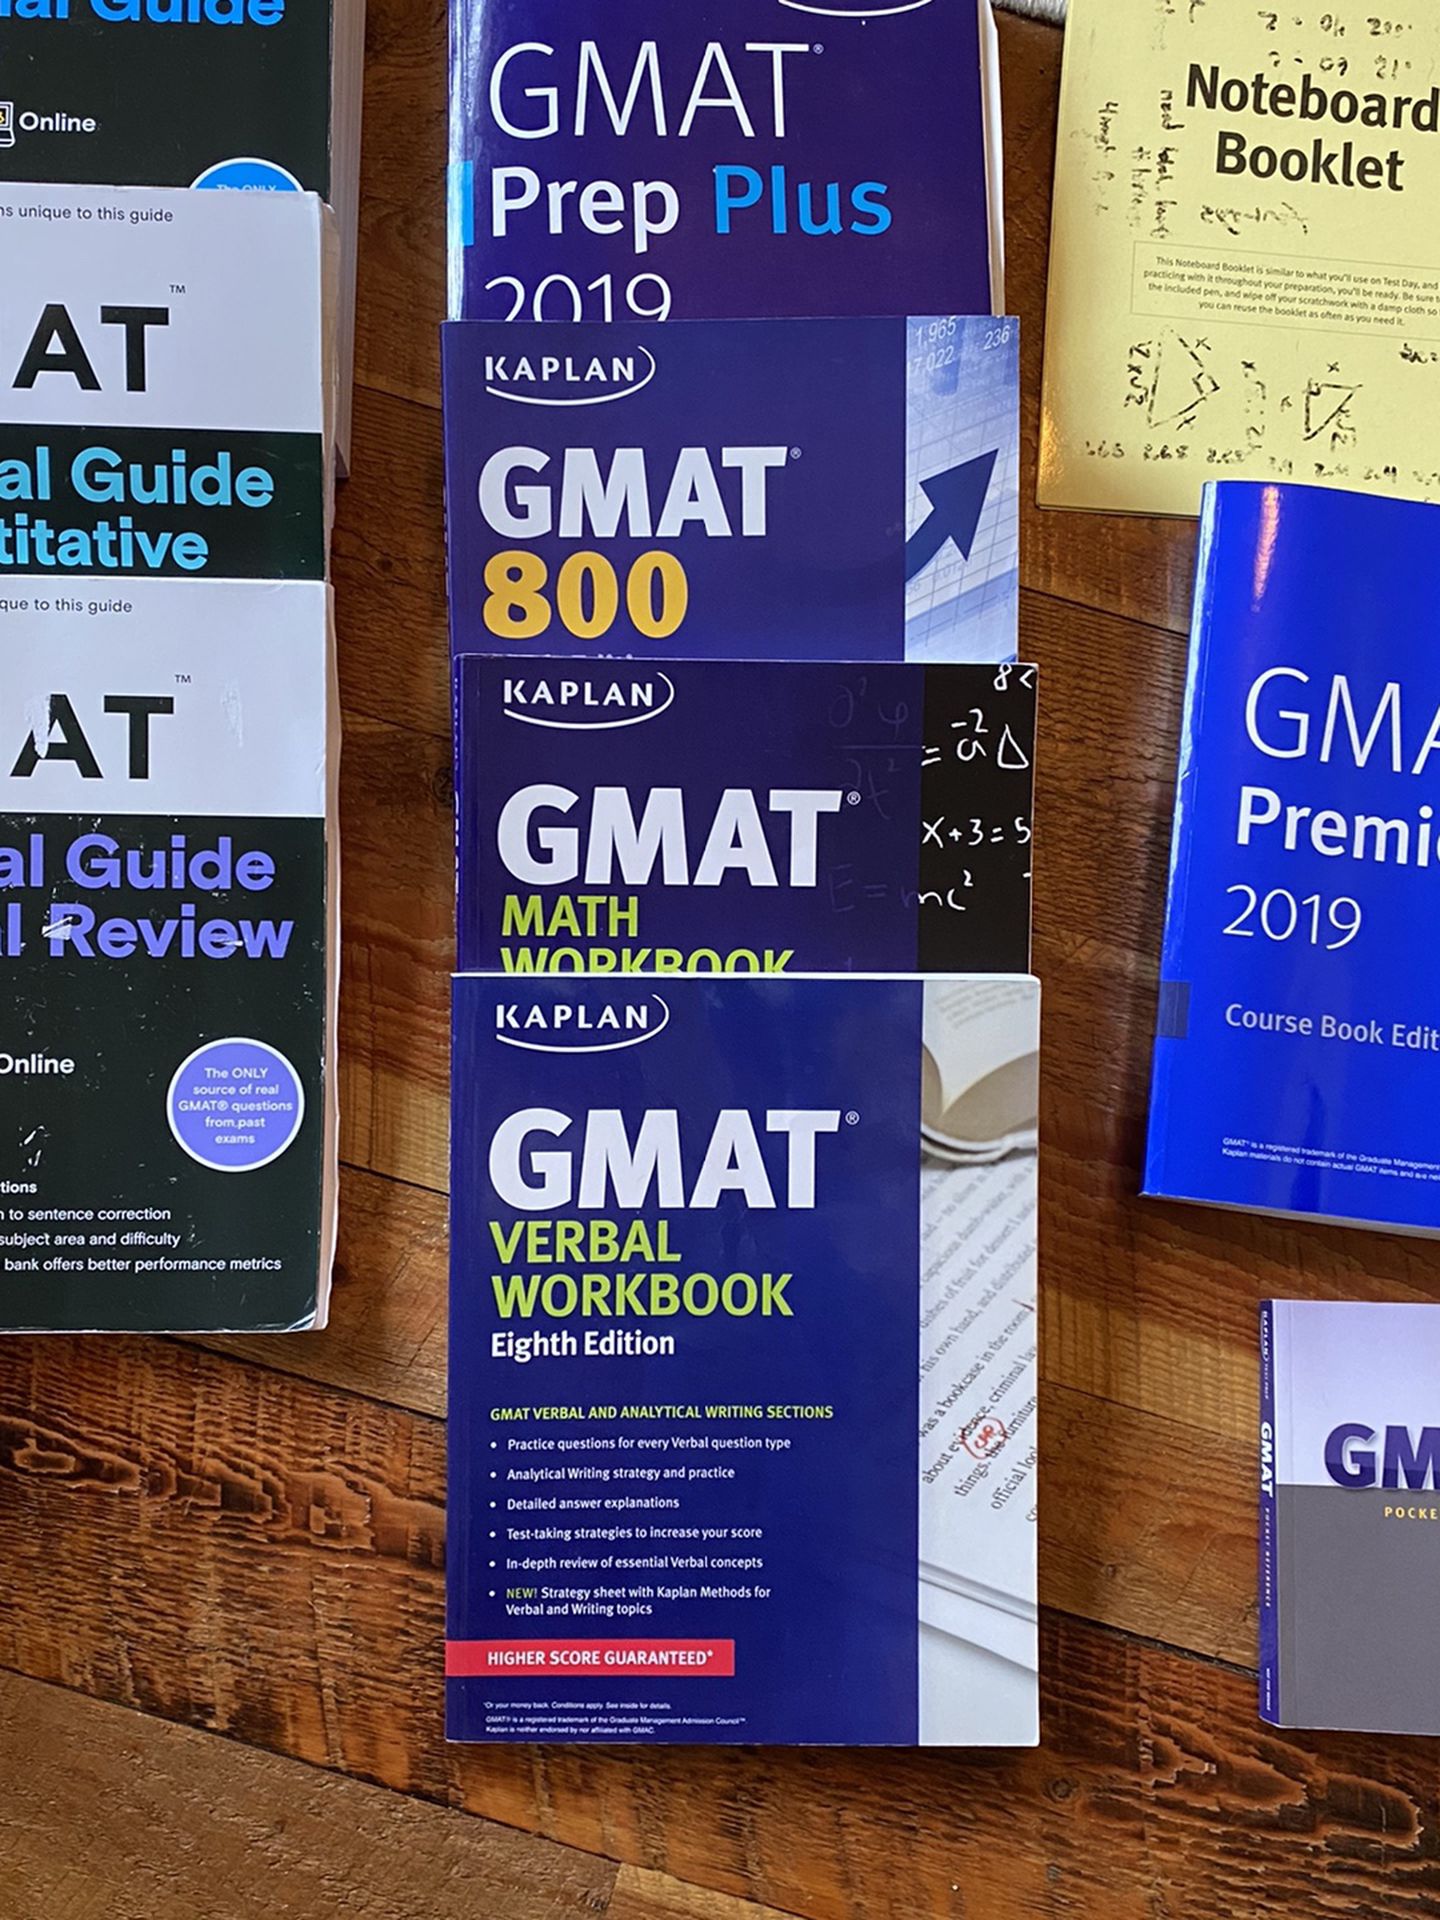 GMAT Prep Material 2019